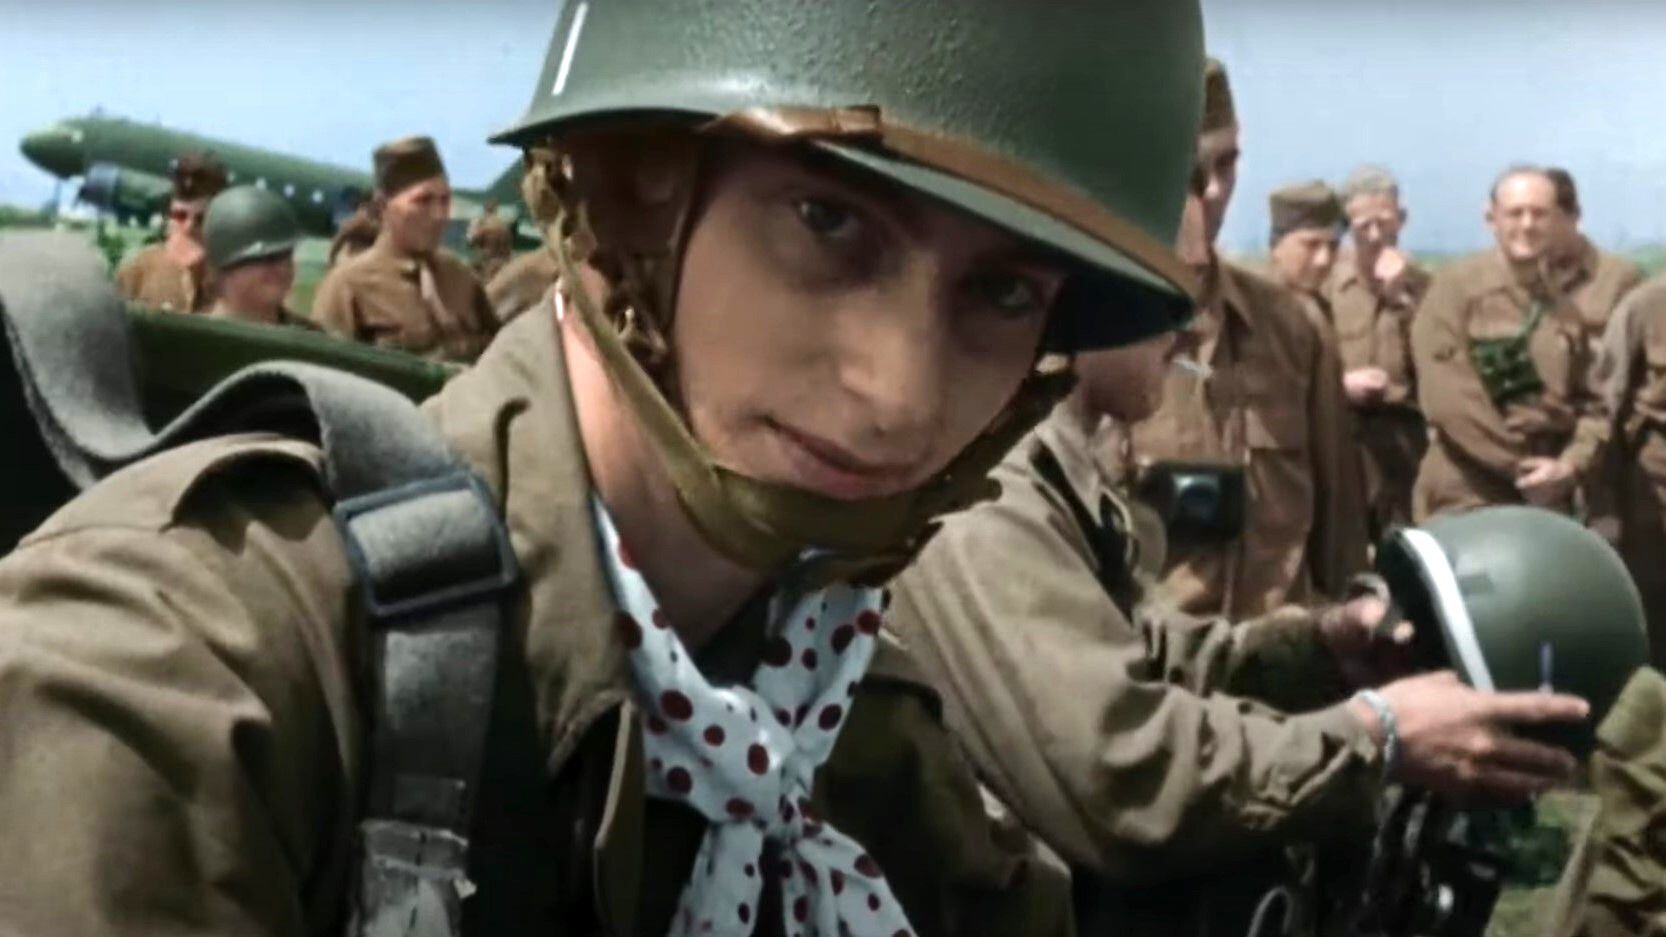 El documental revela material inédito de la Segunda Guerra Mundial, ofreciendo una visión auténtica y conmovedora de la historia. (Créditos: Netflix)